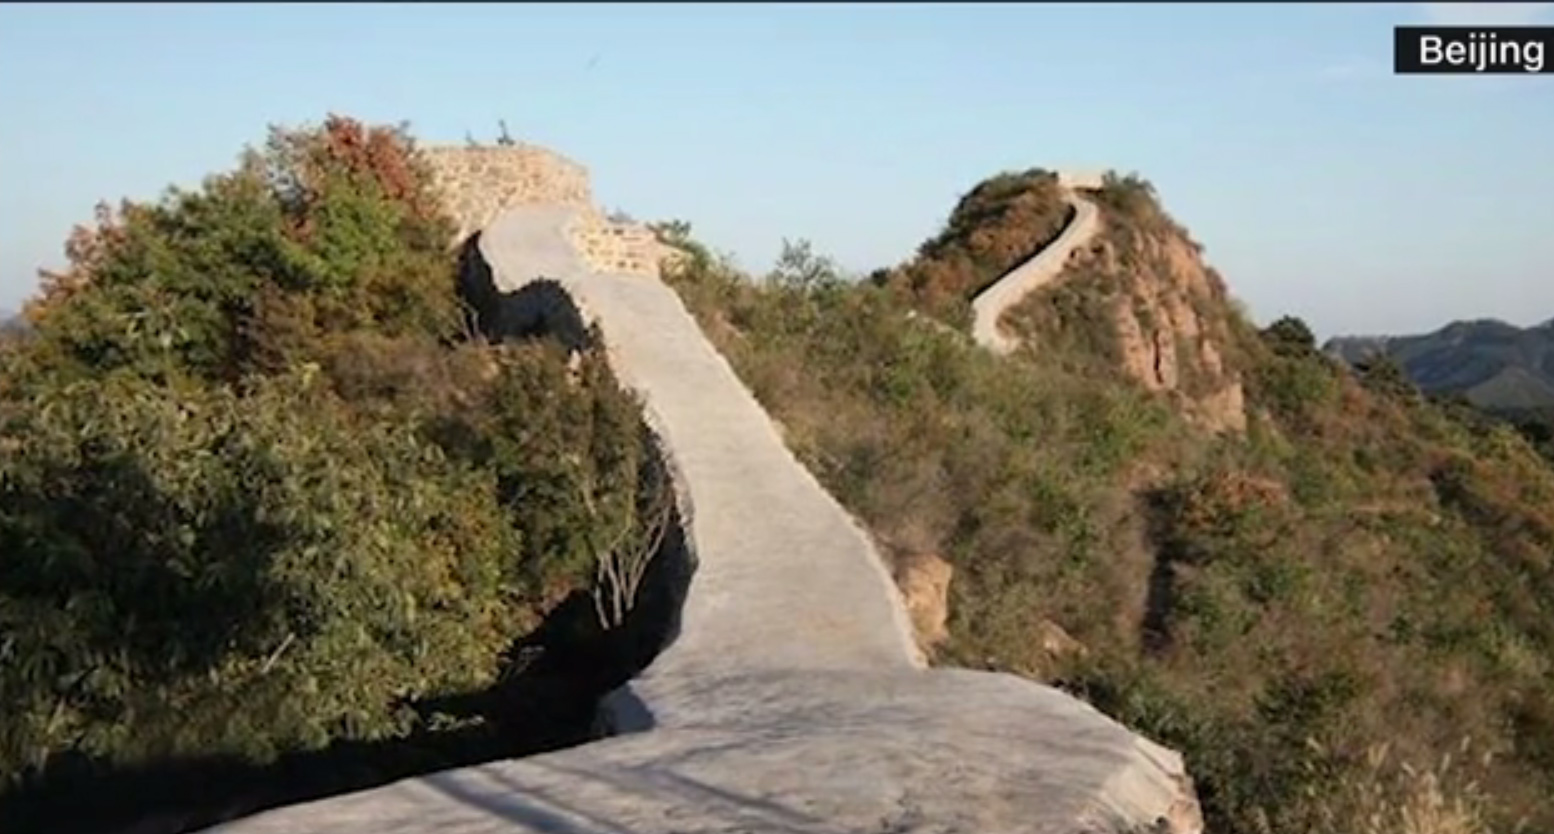 Omladozott, csúnya is volt, úgyhogy inkább lebetonozták a kínaiak a kínai nagy falat